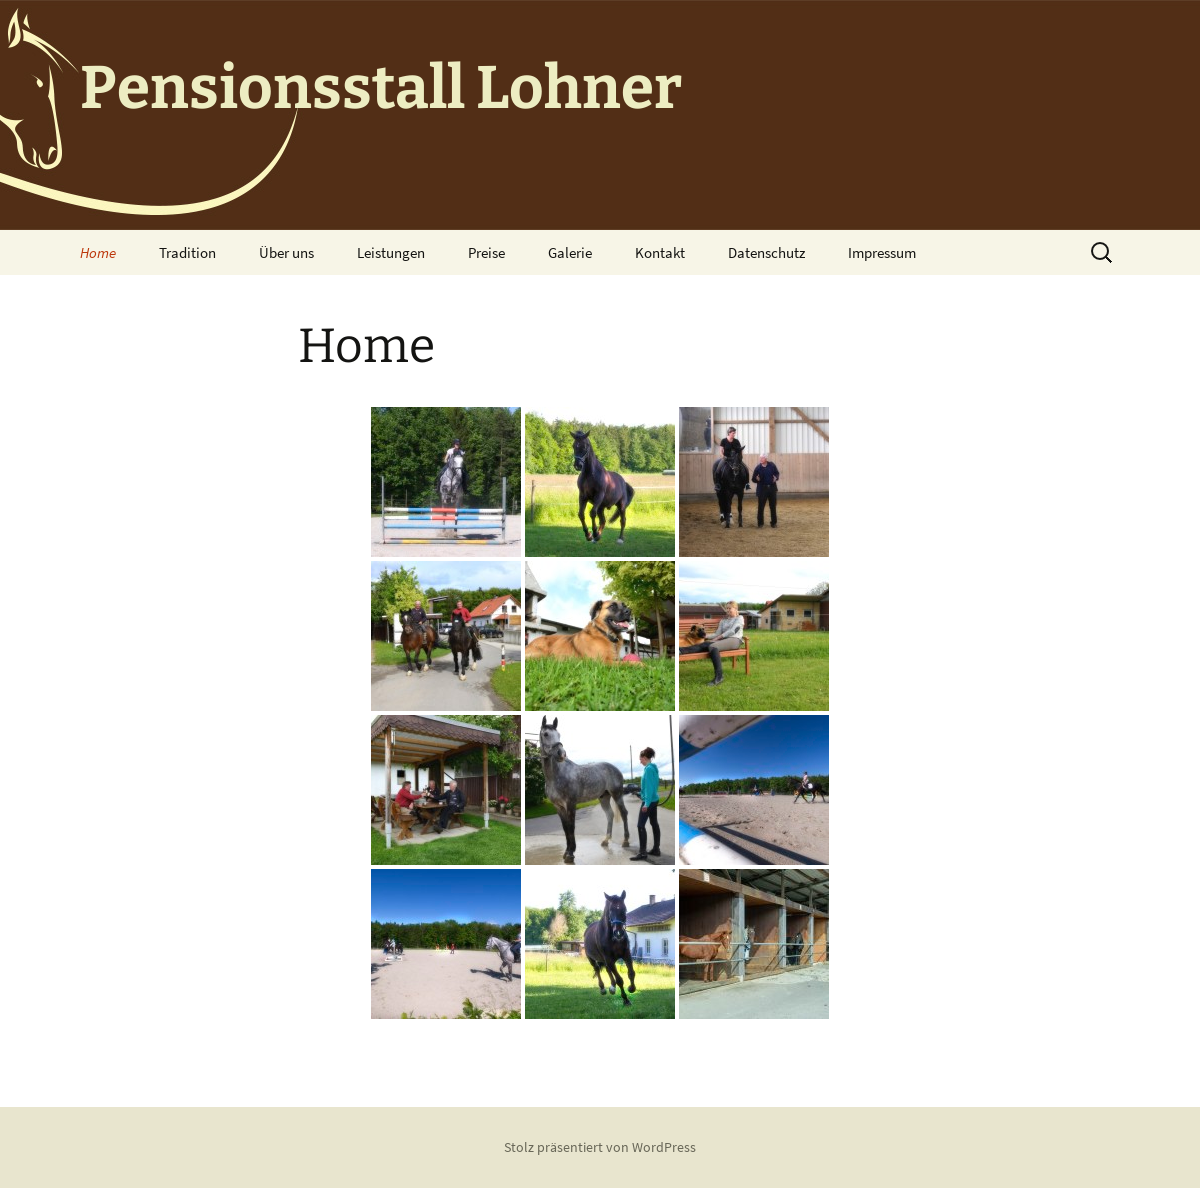 A complete backup of pensionsstall-lohner.de